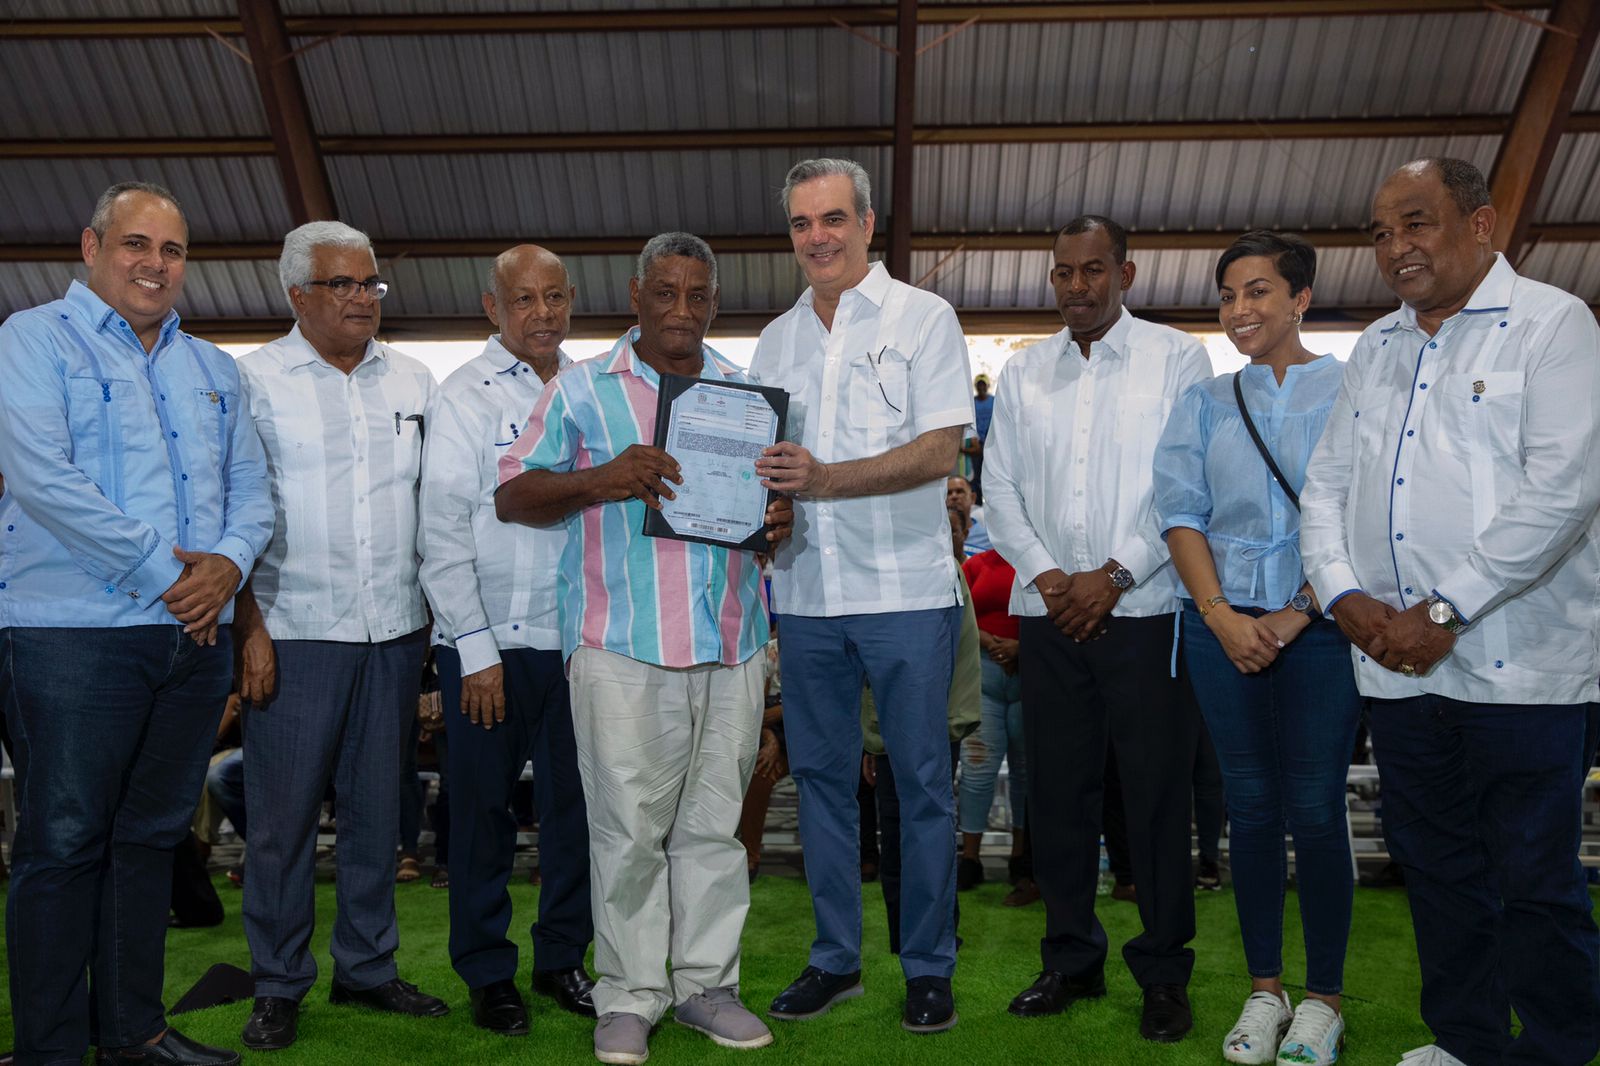 REPÚBLICA DOMINICANA: Presidente Abinader entrega más de 300 títulos de propiedad en Montecristi; inaugura centro de INFOTEP y hotel Wyndham Garden El Morro